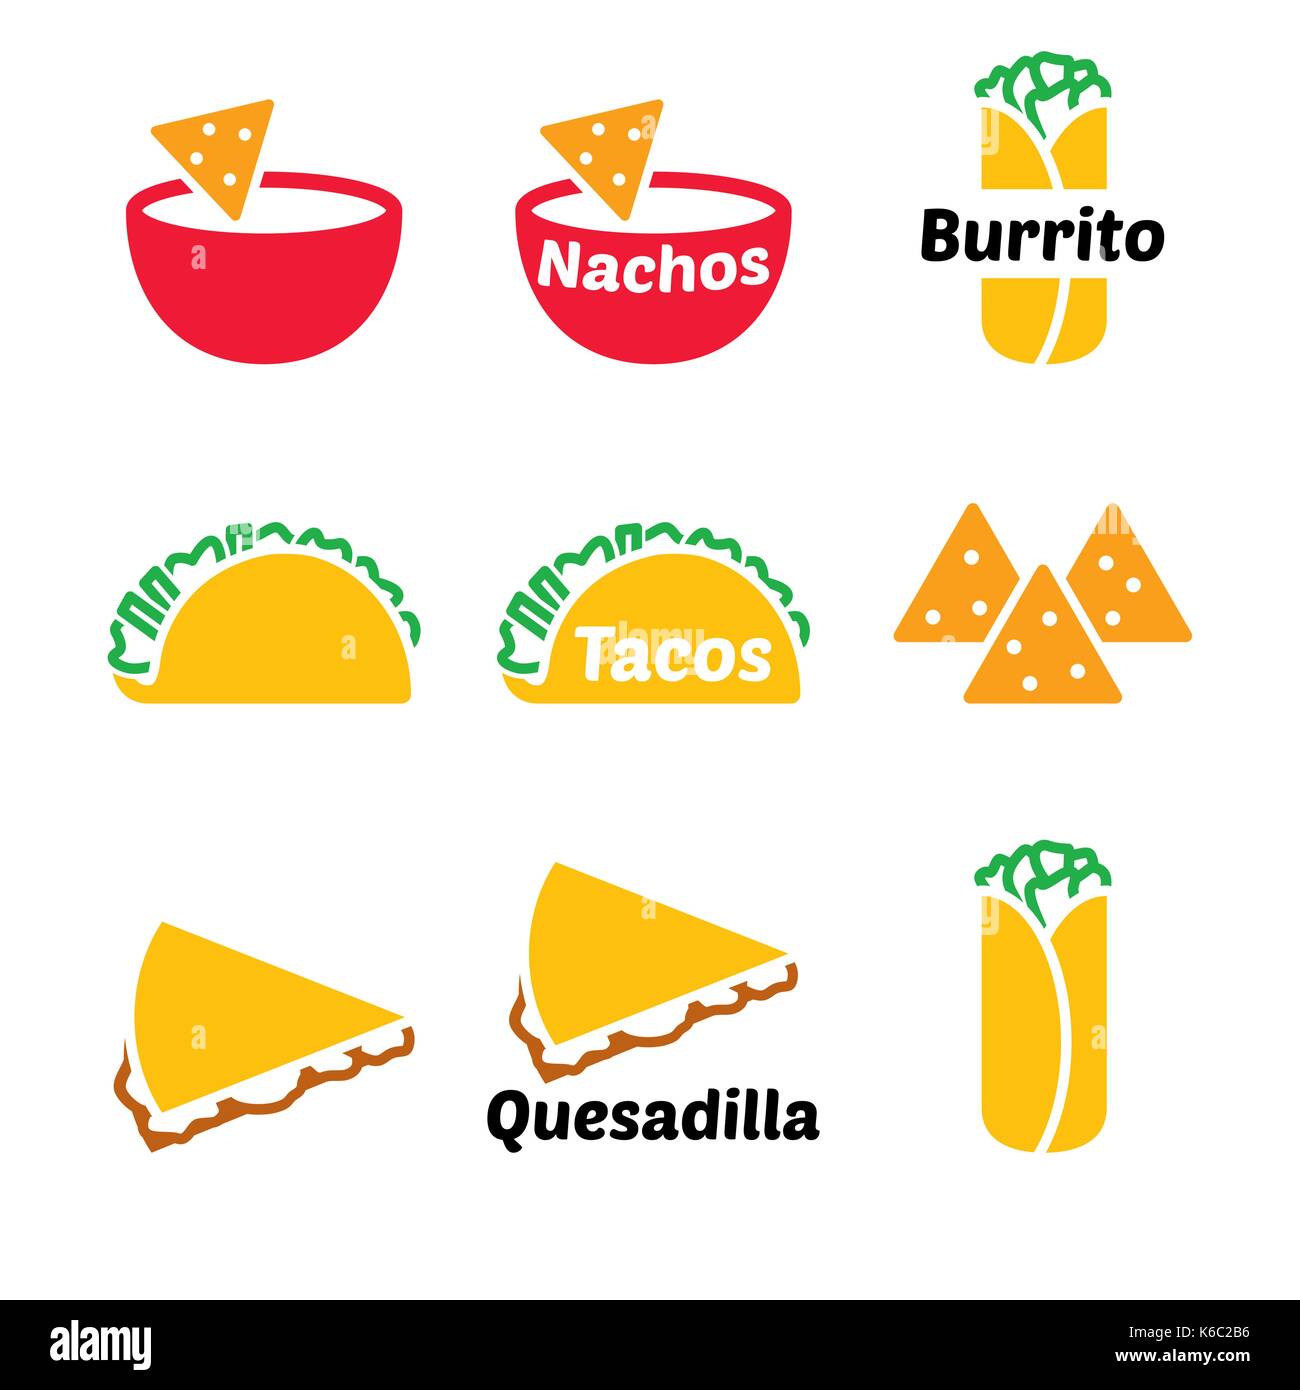 Mexican Food Vector Icon Set   Tacos, Nachos, Burrito, Quesadilla Stock Vector